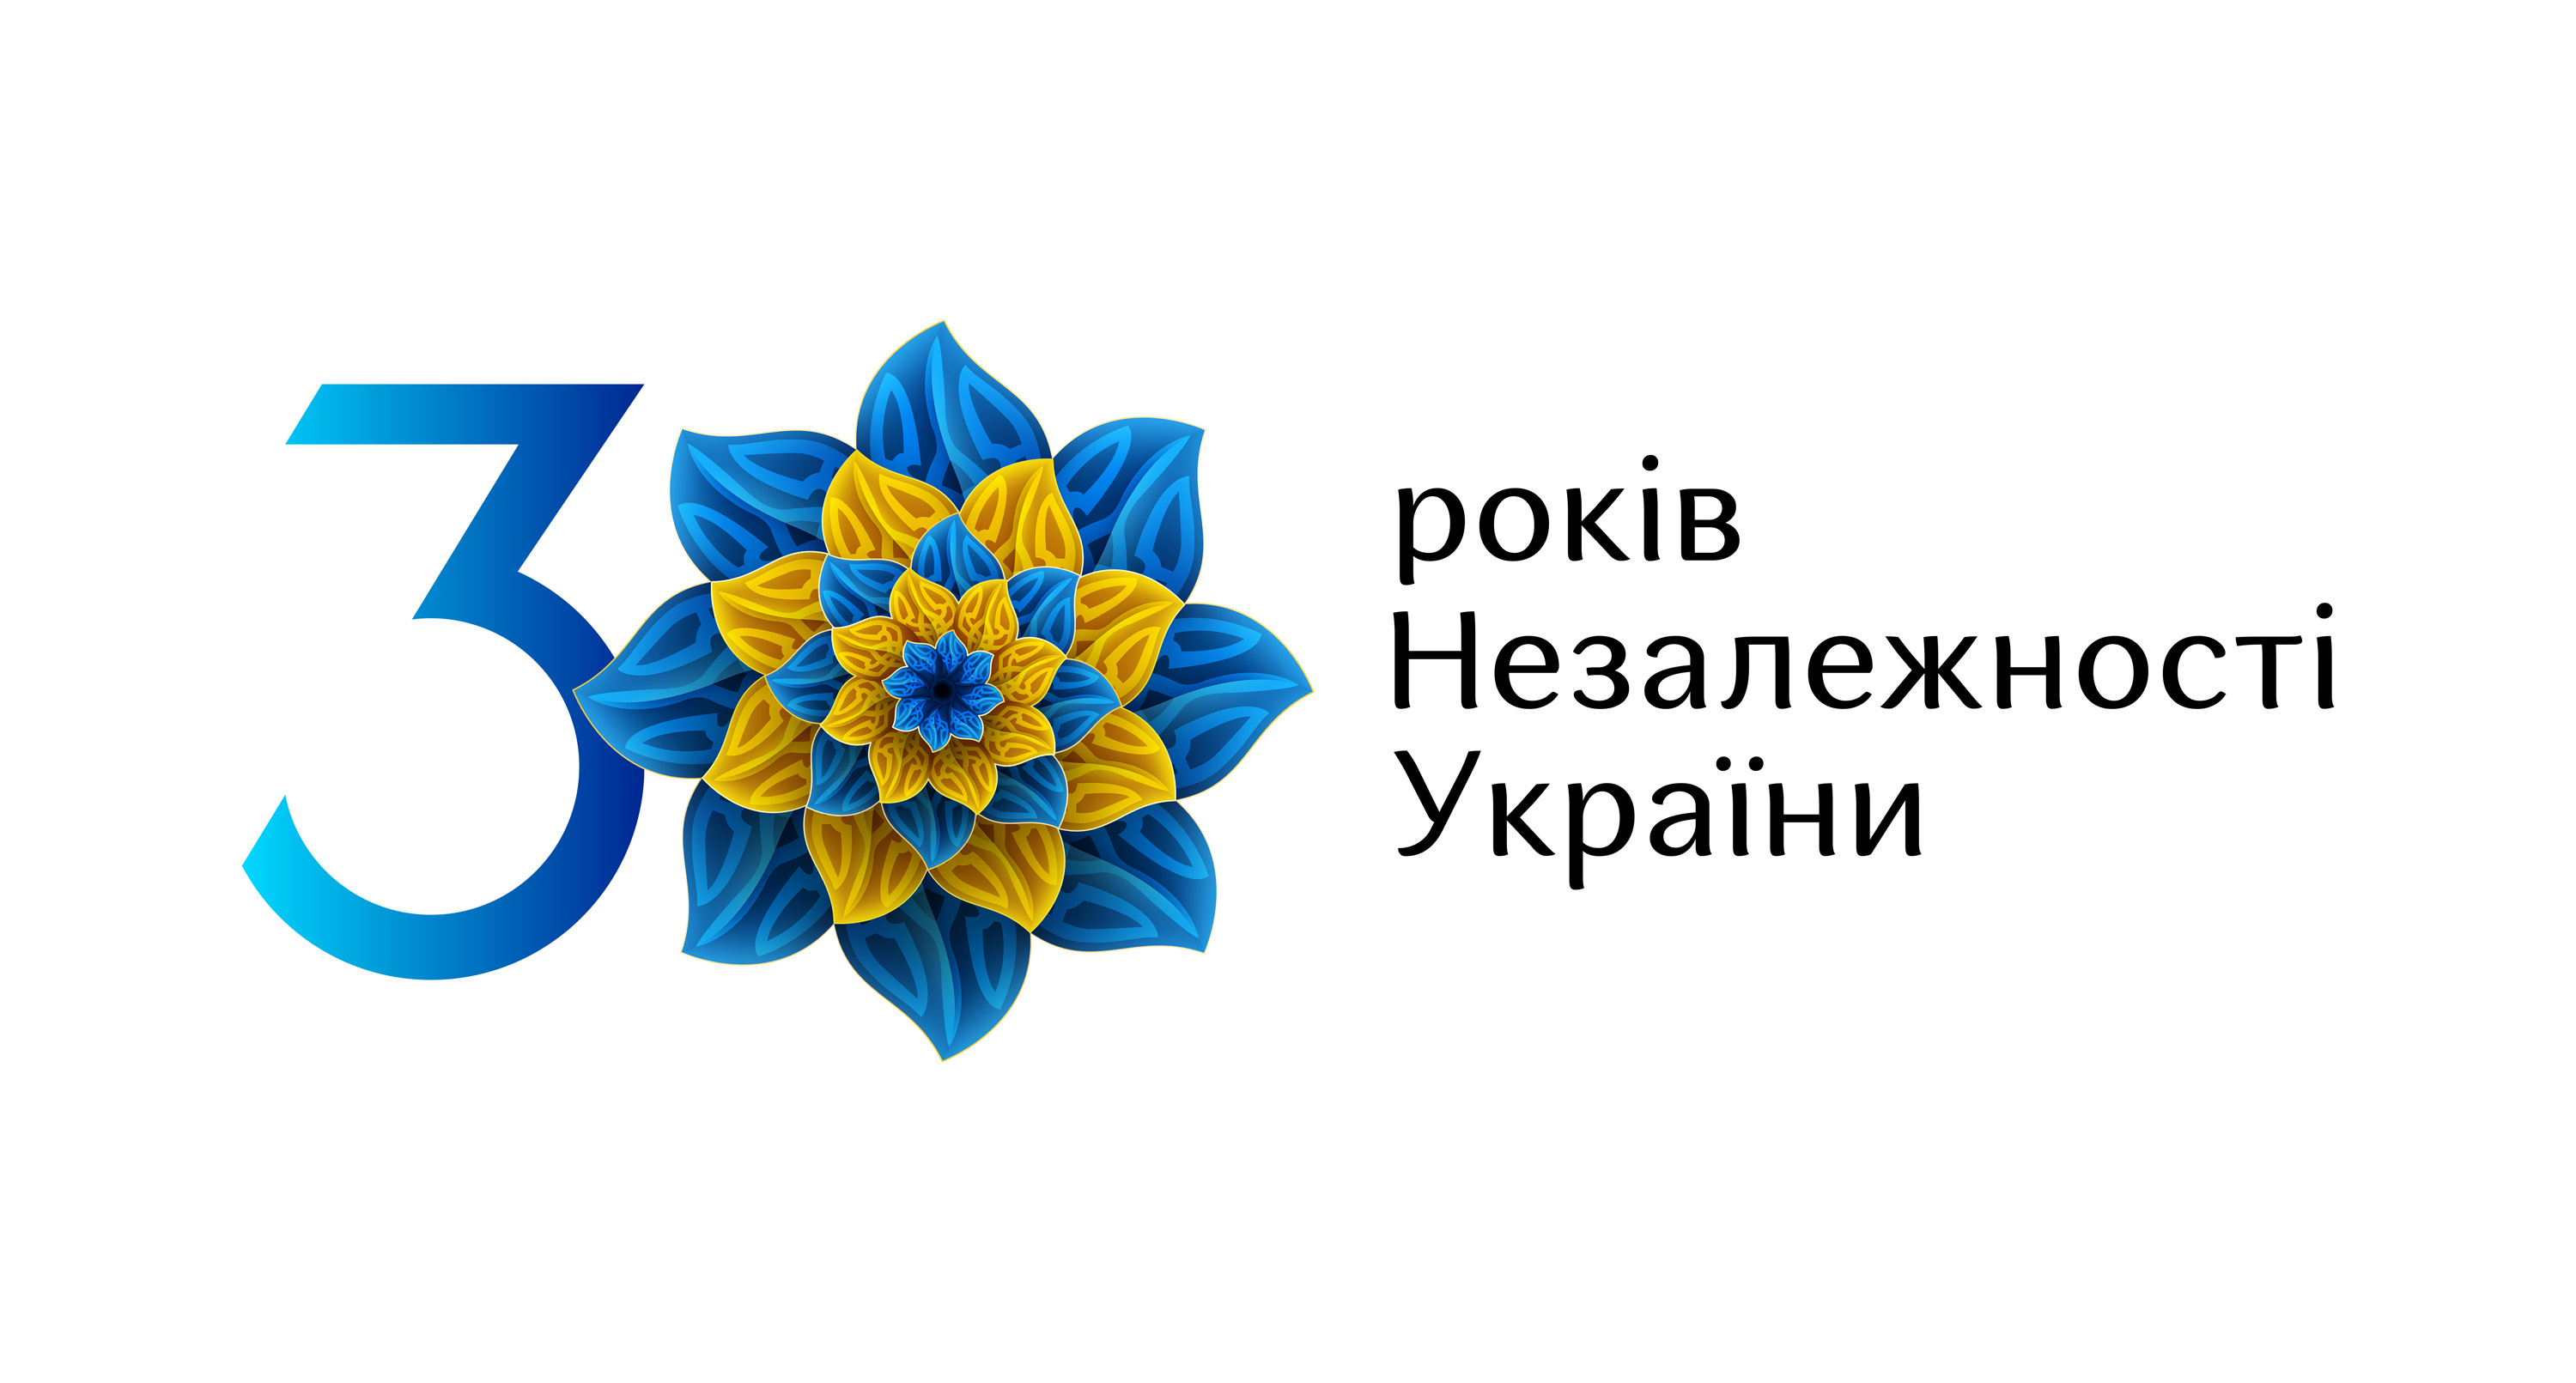 вітання з днем незалежності України! фото